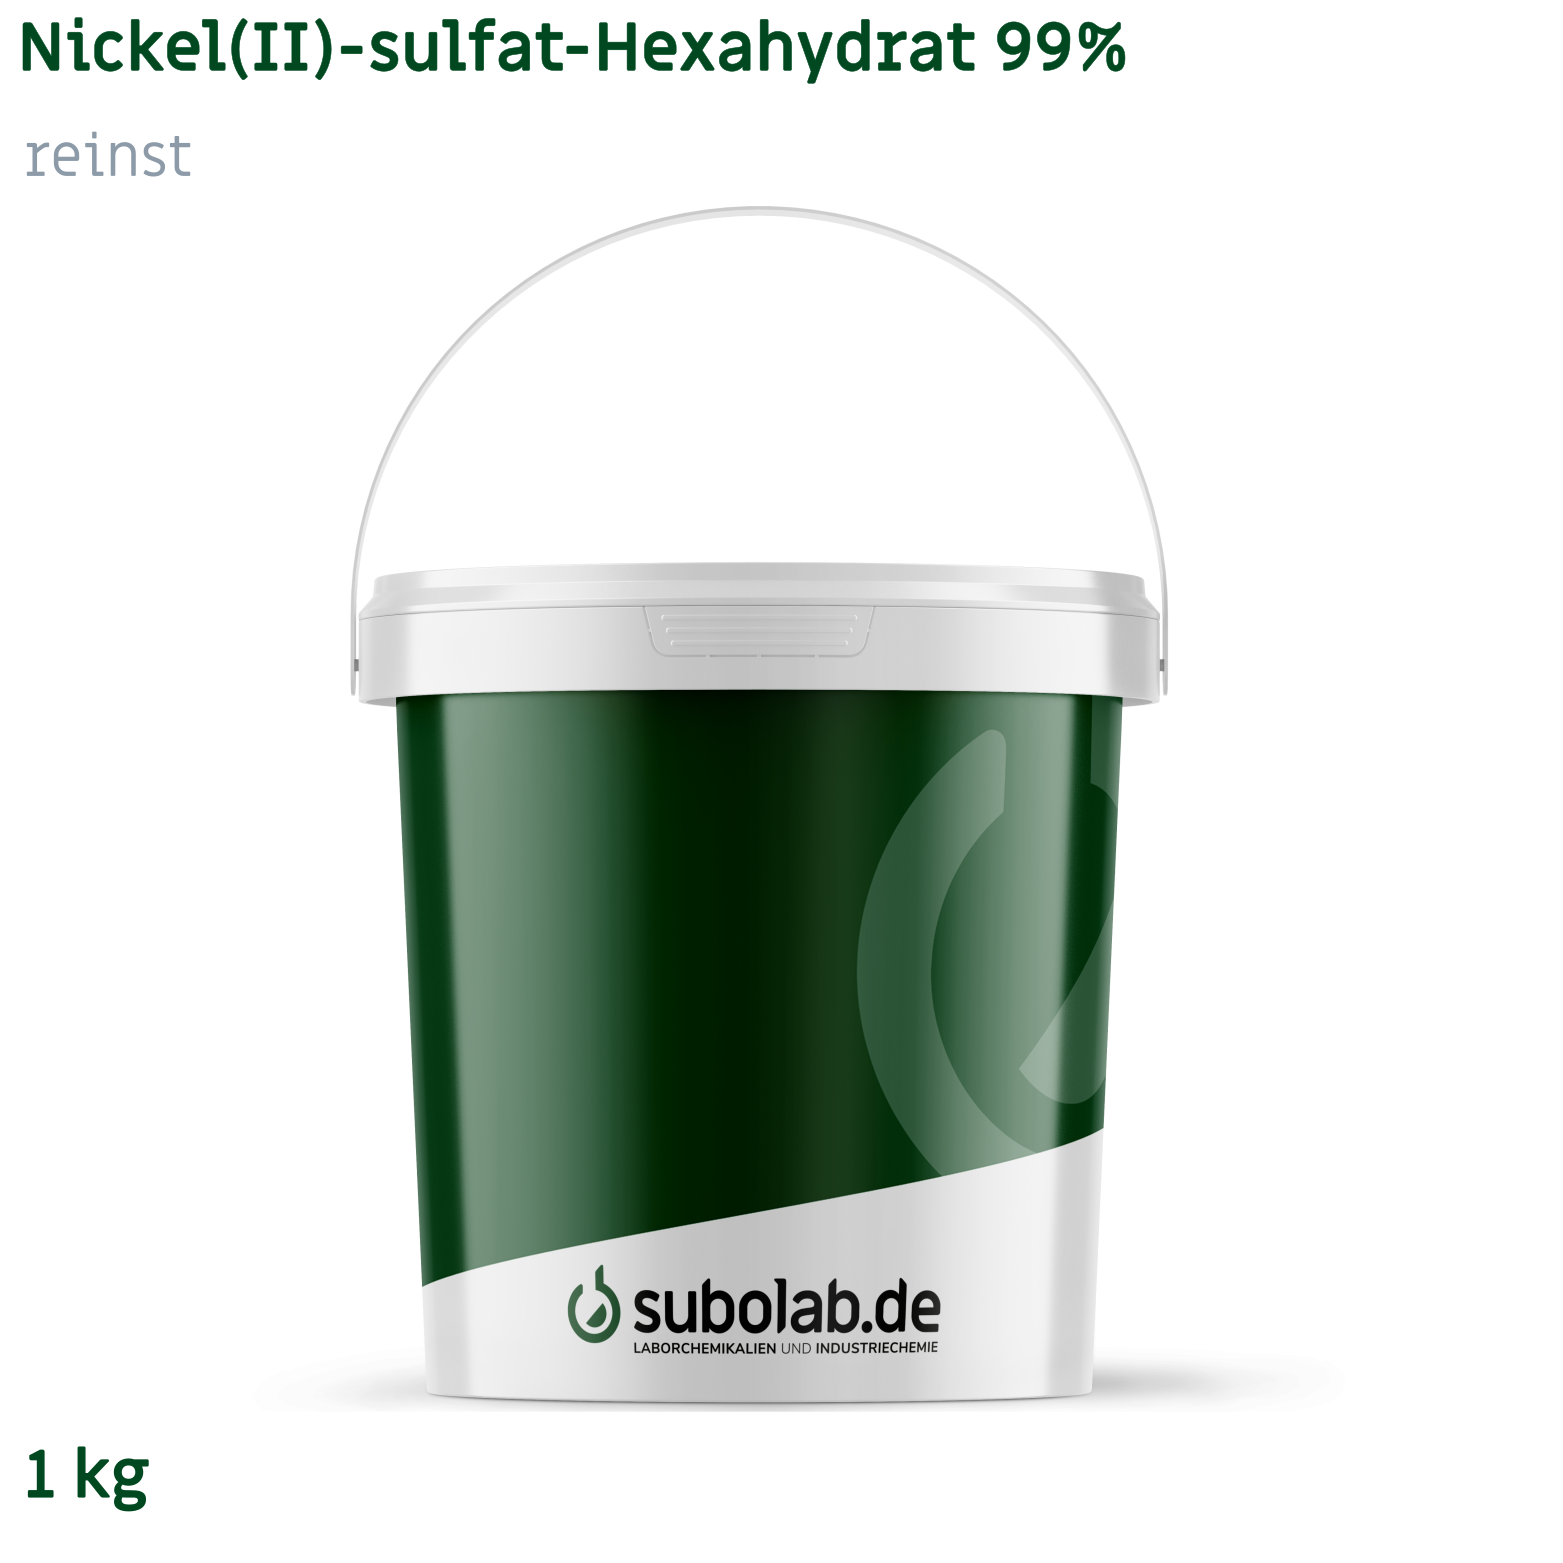 Bild von Nickel(II)-sulfat - Hexahydrat 99% reinst (1 kg)